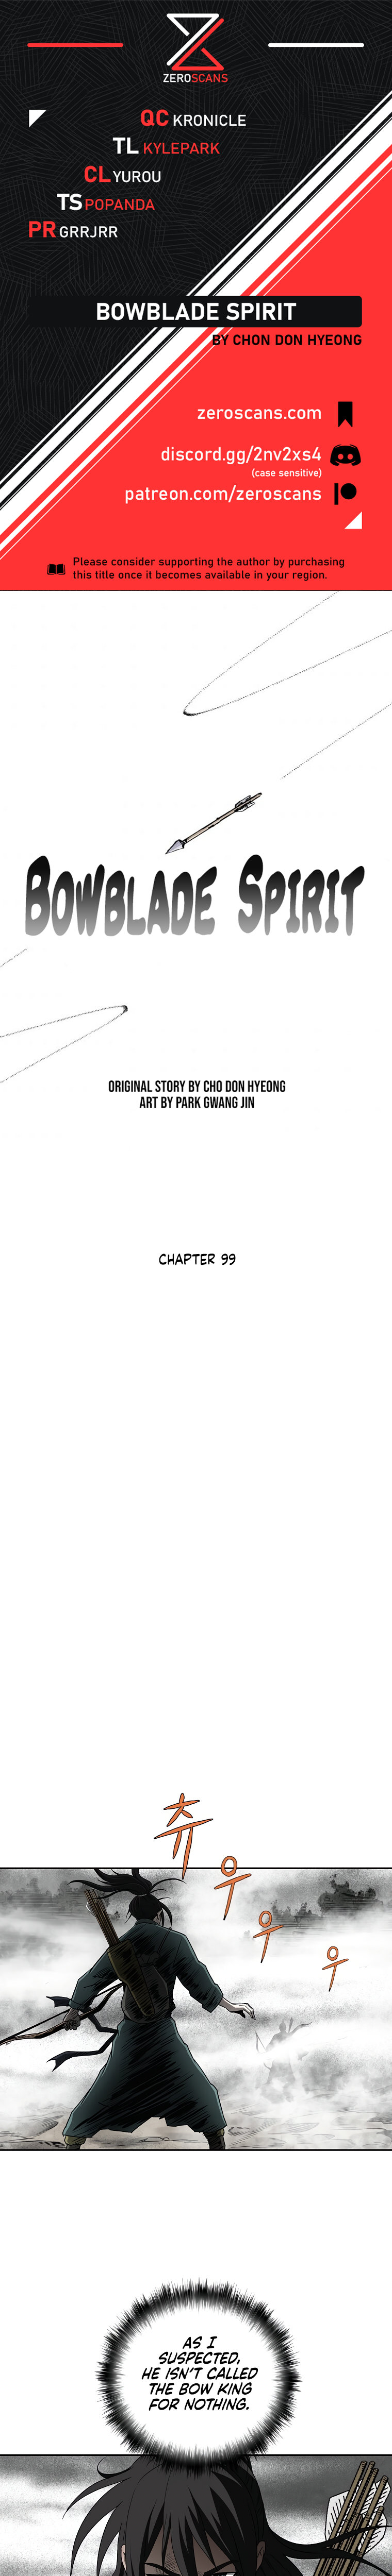 Bowblade Spirit - Chapter 99 Page 1